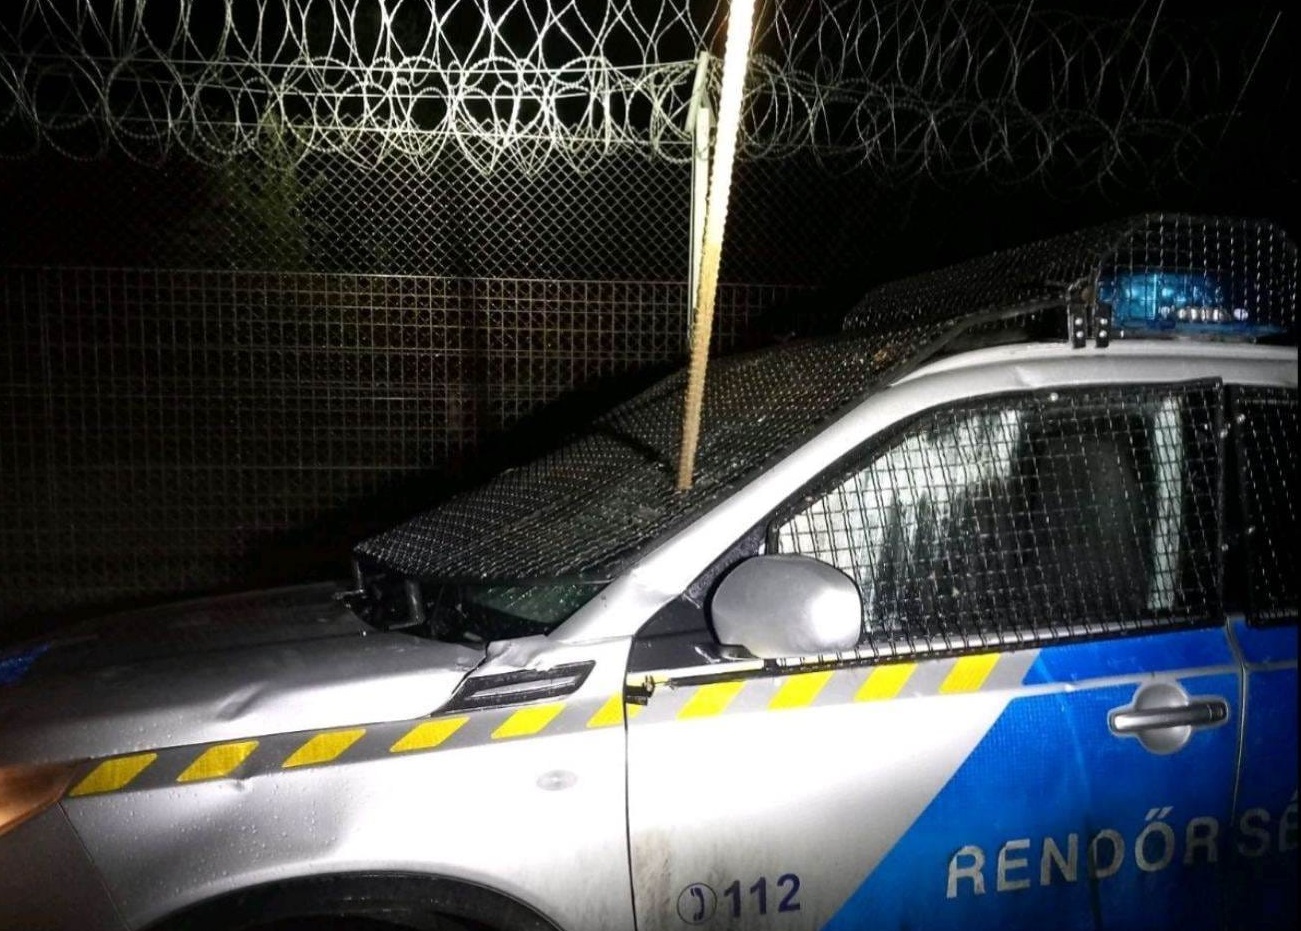 Brutális támadás érte a határt védő rendőröket: betonvassal szúrták át a szolgálati autójukat